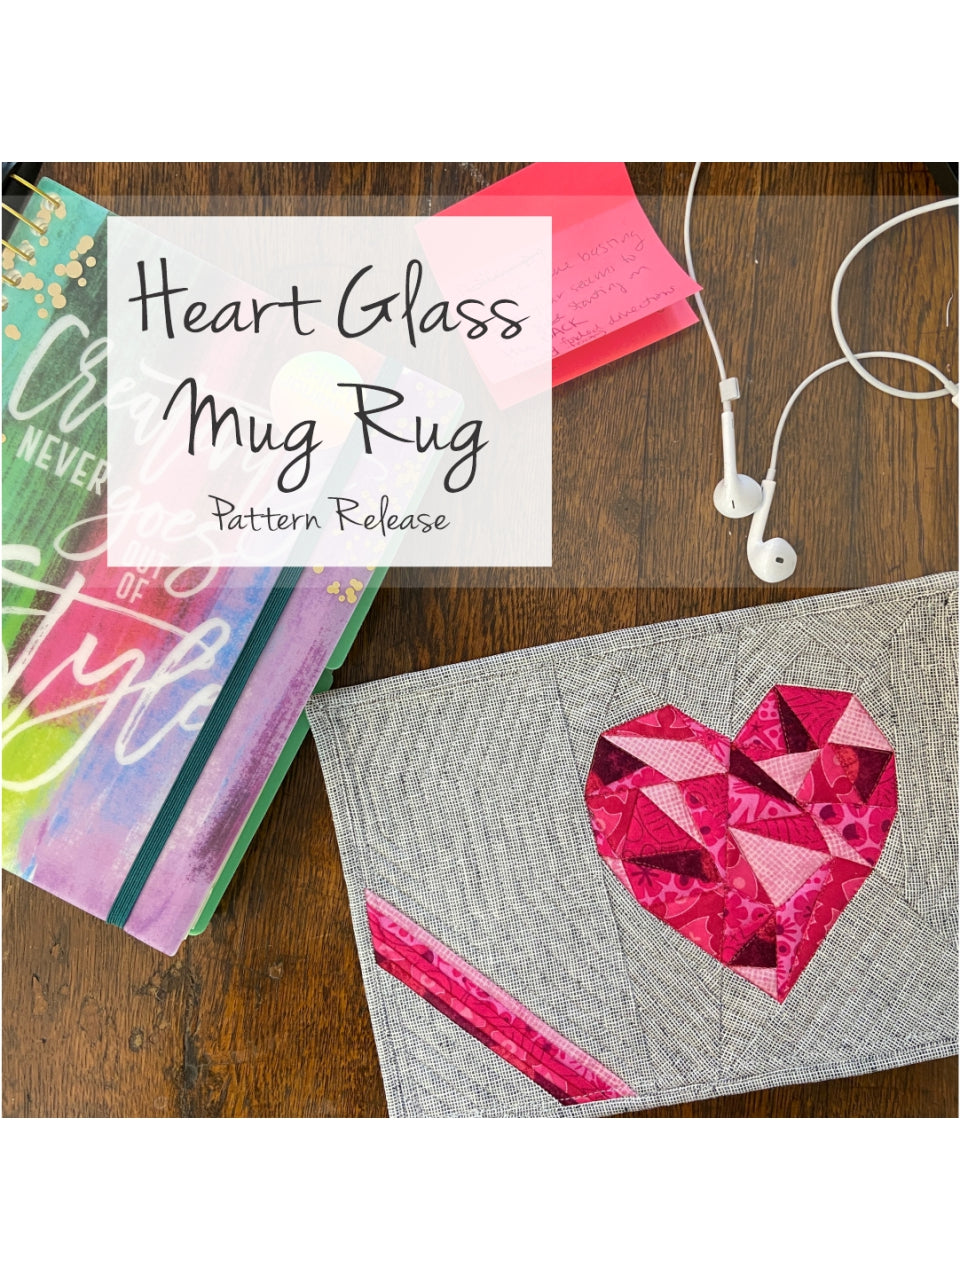 Heart Glass & XOXO Glass Mug Rug Bundle - PDF